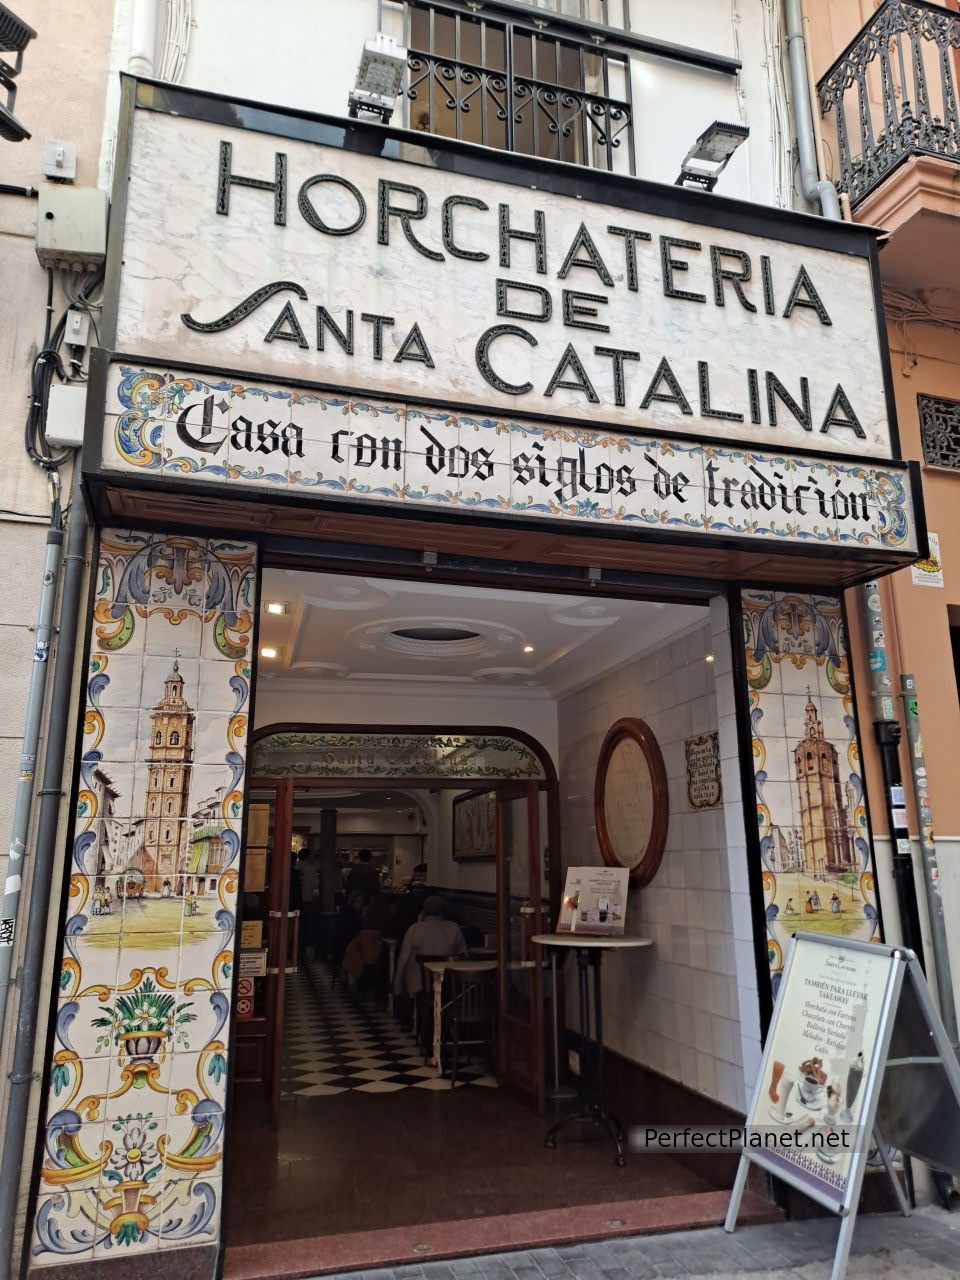 Horchateria Santa Catalina